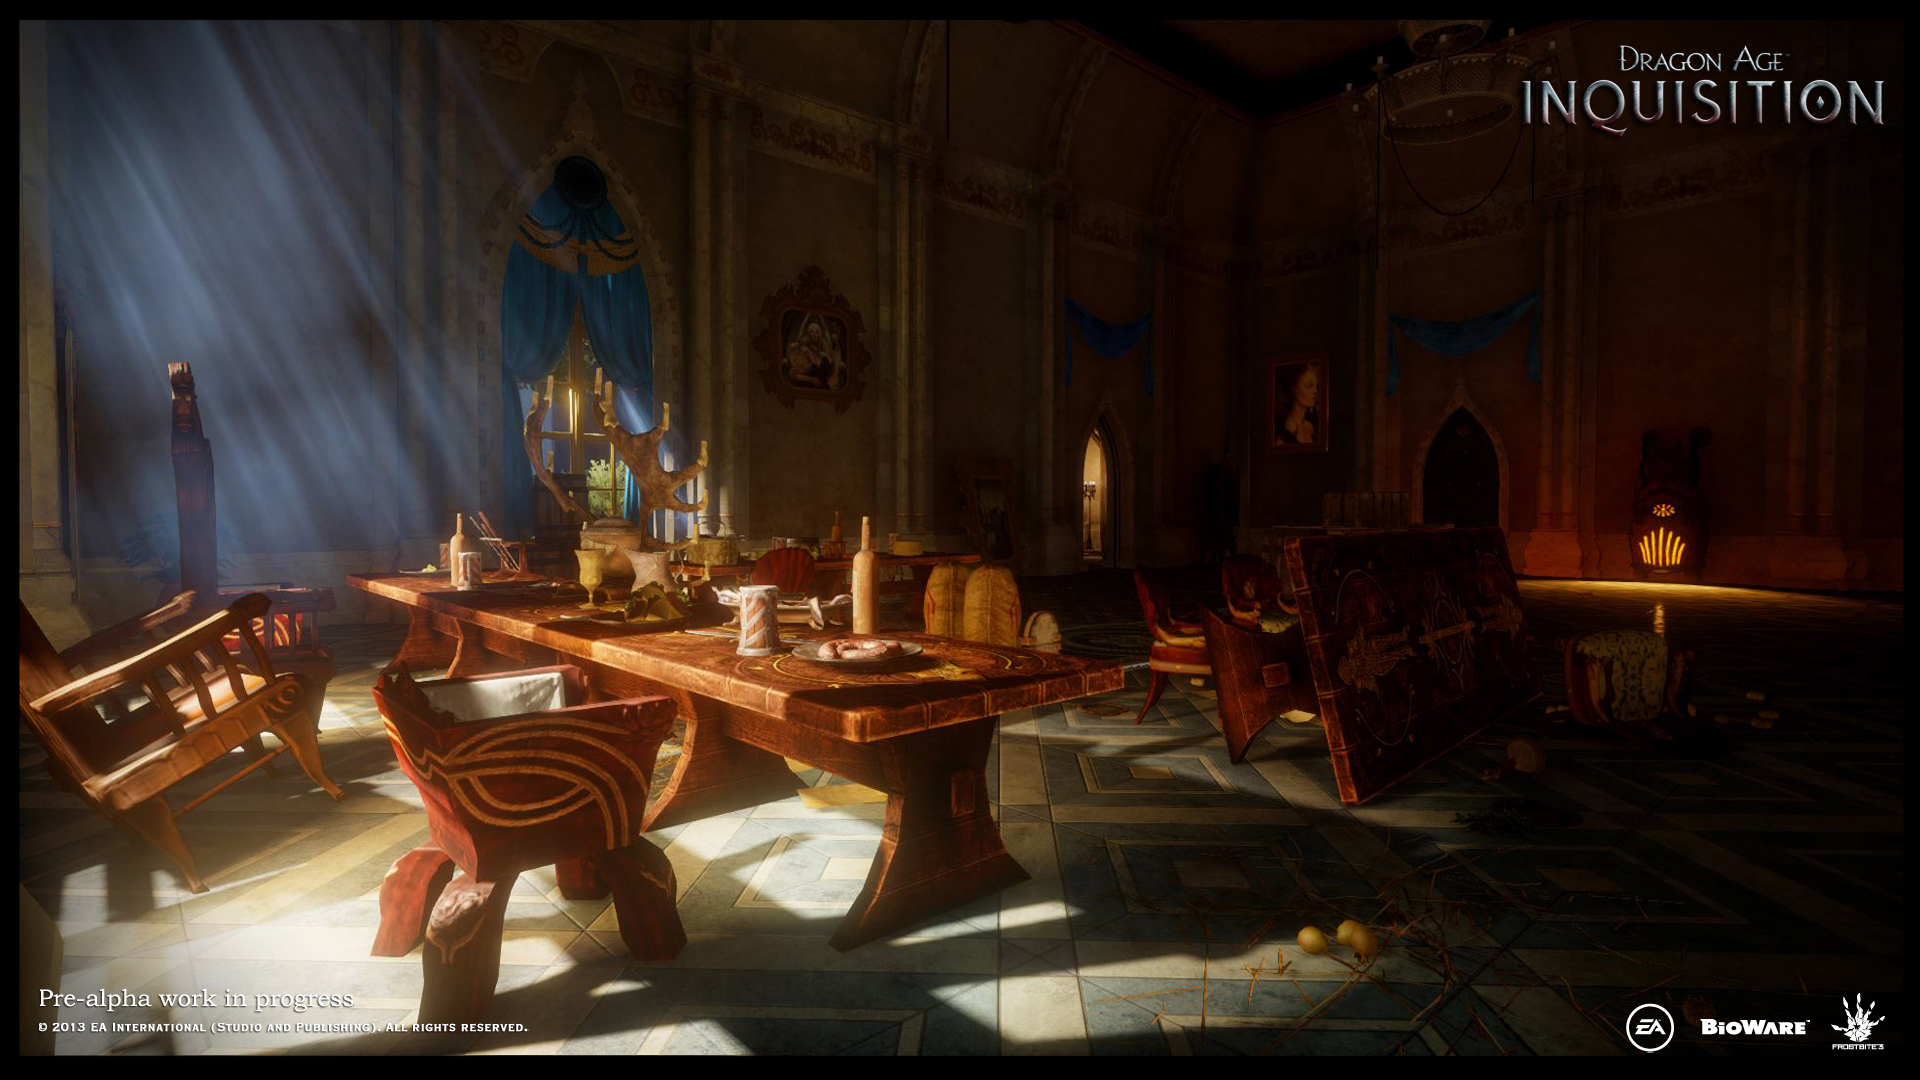 Immagine pubblicata in relazione al seguente contenuto: BioWare pubblica nuovi screenshot del game Dragon Age: Inquisition | Nome immagine: news20523_Dragon-Age-Inquisition-screenshot_8.jpg